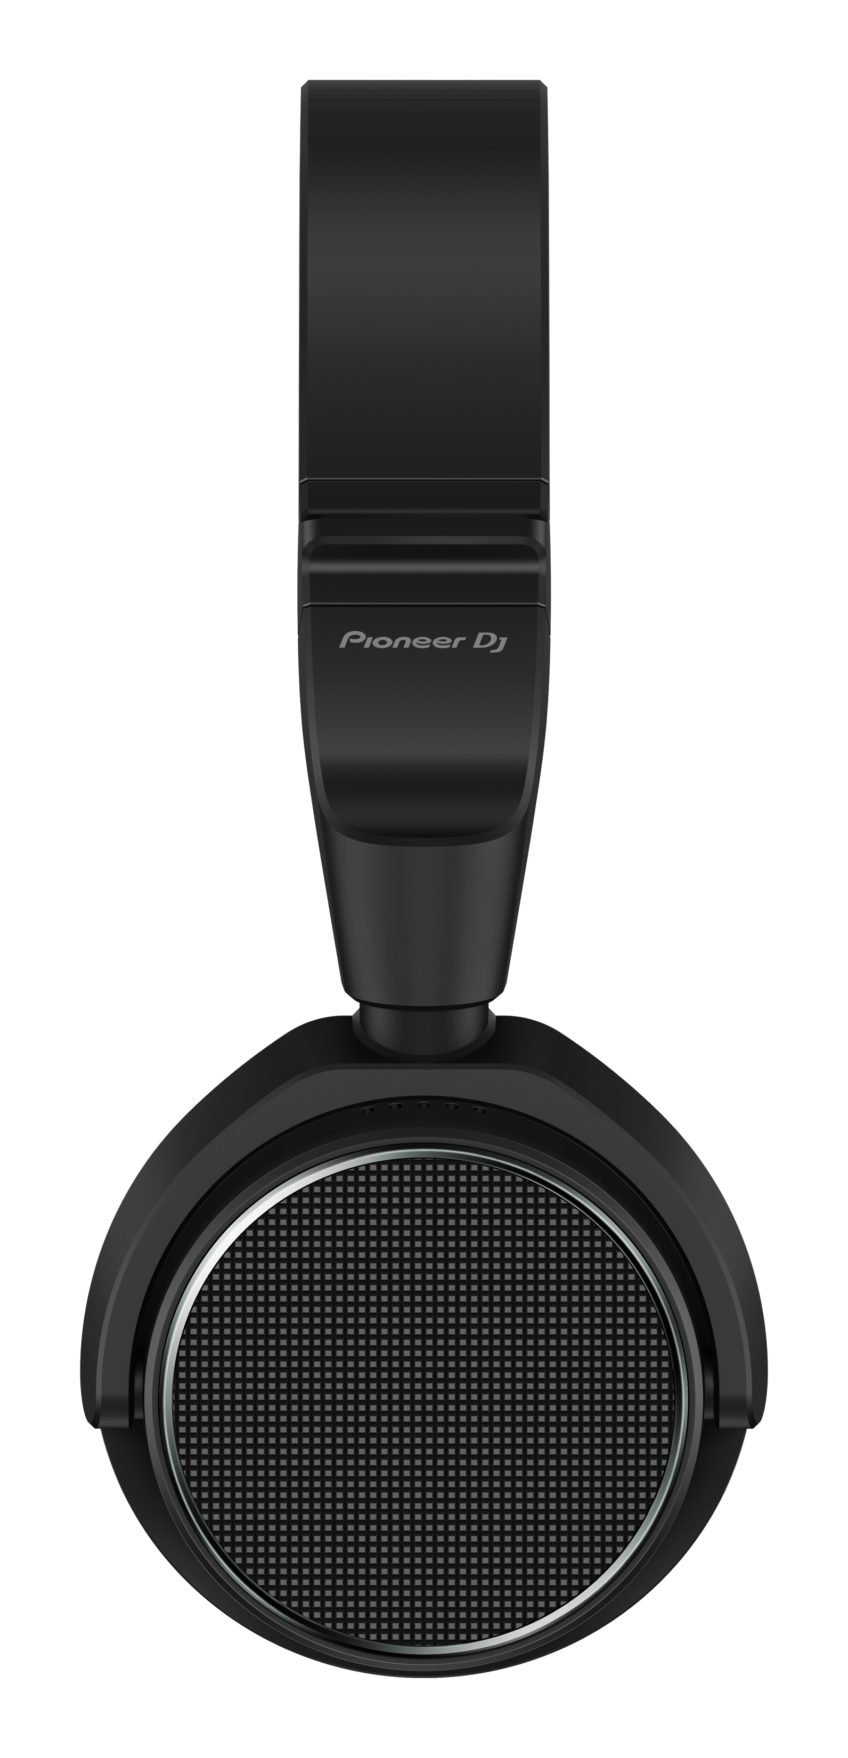 Pioneer HDJ-S7 Headphones